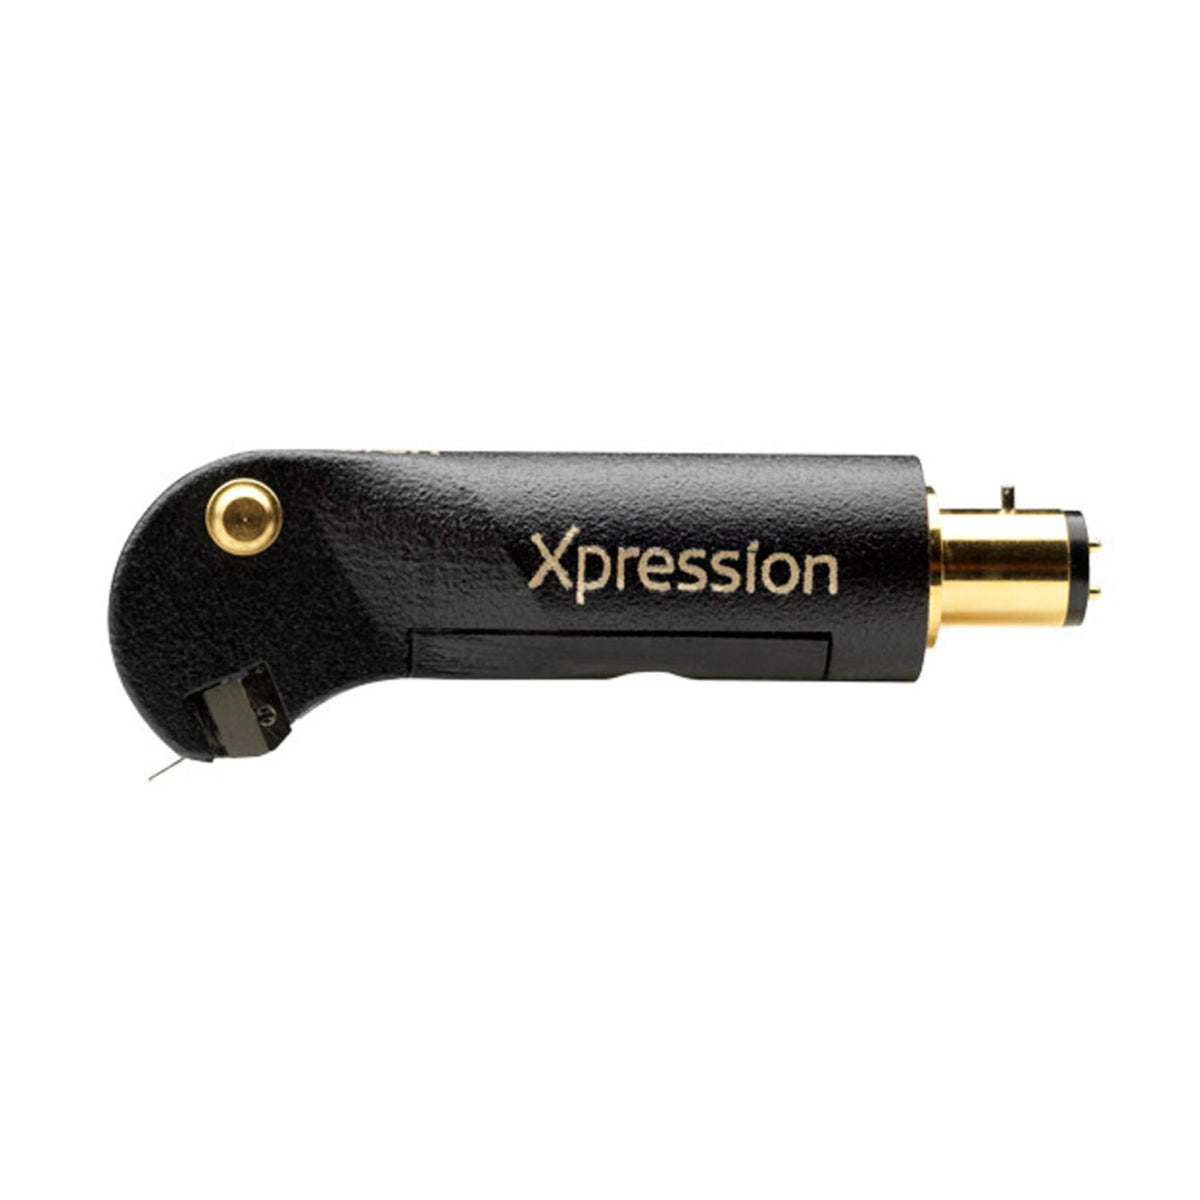 Ortofon MC Xpression - The High-End cartridge, Ortofon, Turntable Accessories - AVStore.in